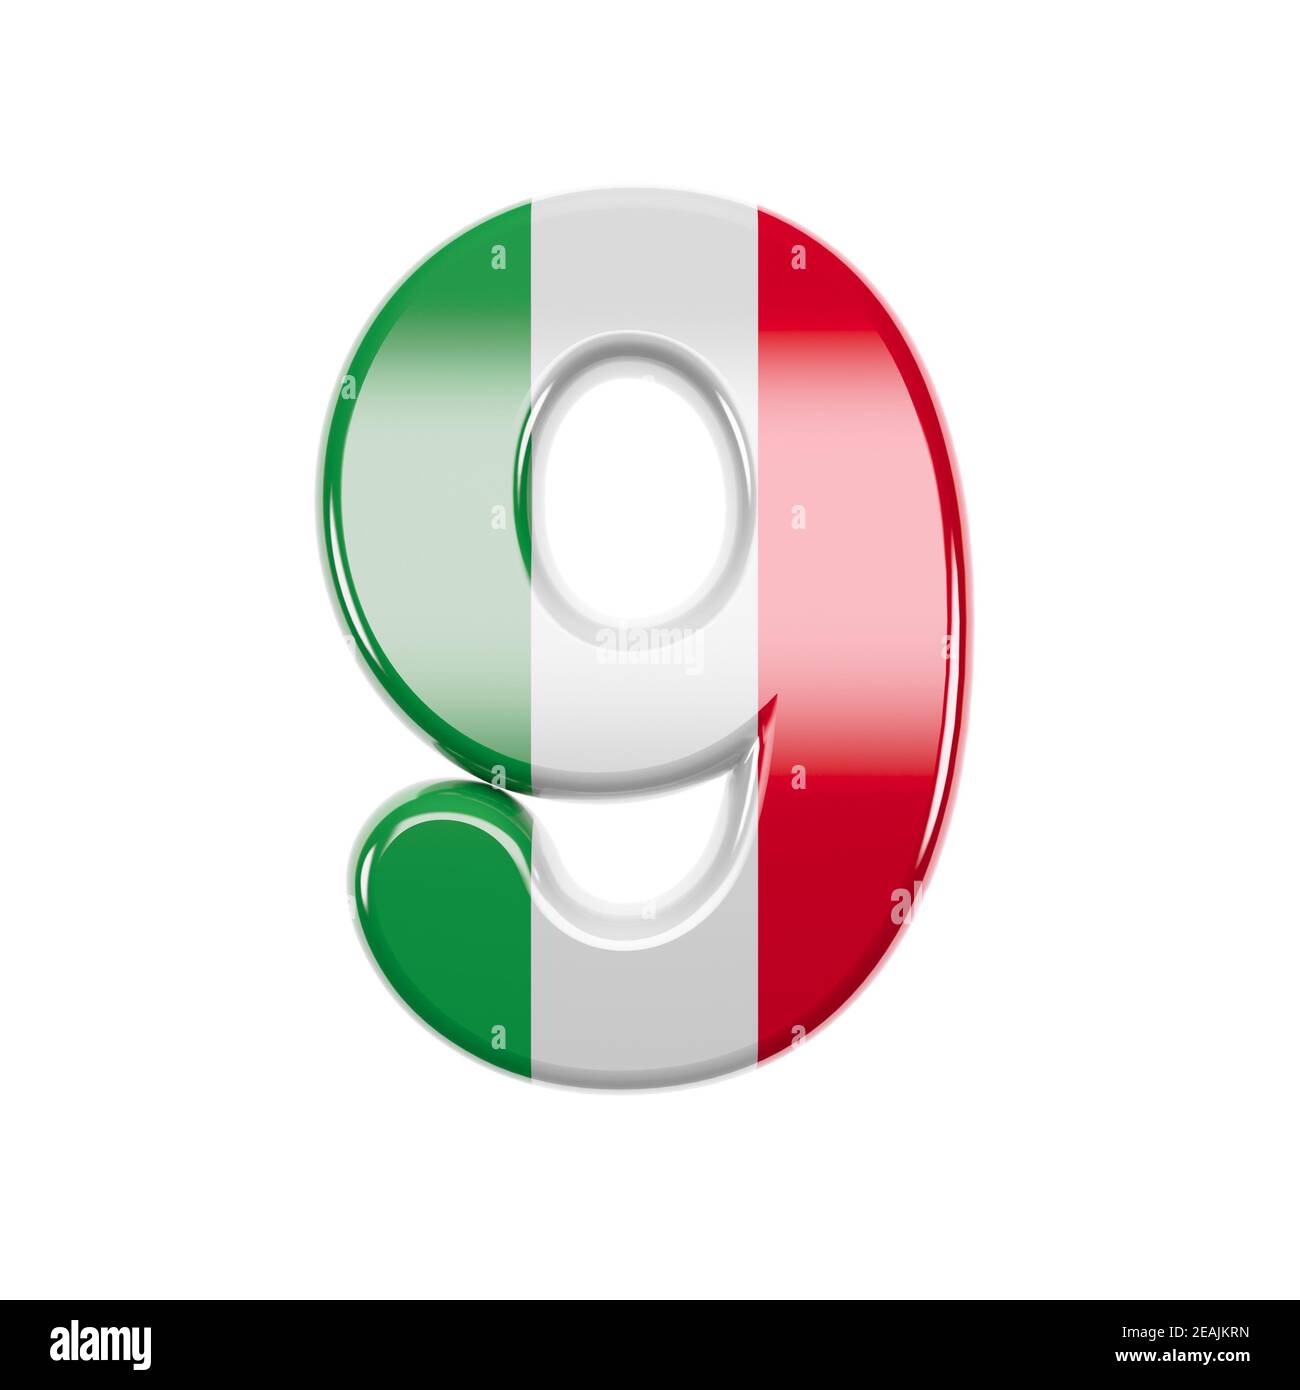 Italien numéro 9 - 3d Italie chiffre drapeau - adapté pour l'Italie, l'Europe ou Rome sujets connexes Banque D'Images